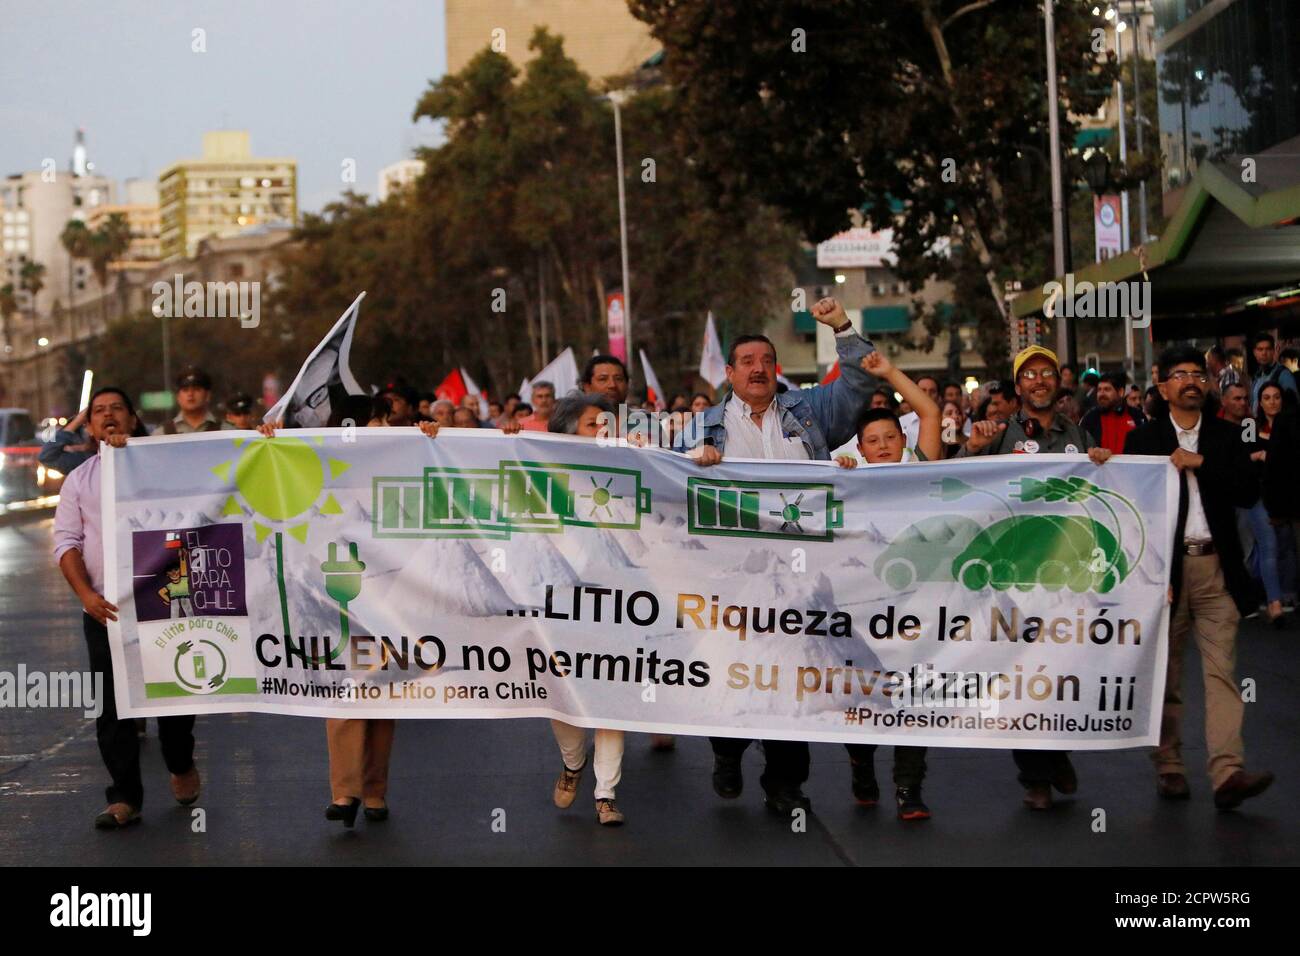 Manifestantes con un cartel que dice: &quot;Litio, riqueza de la nación, Chile no permite su privatización&quot;, participan en una manifestación en defensa de la nacionalización de las reservas de litio en el